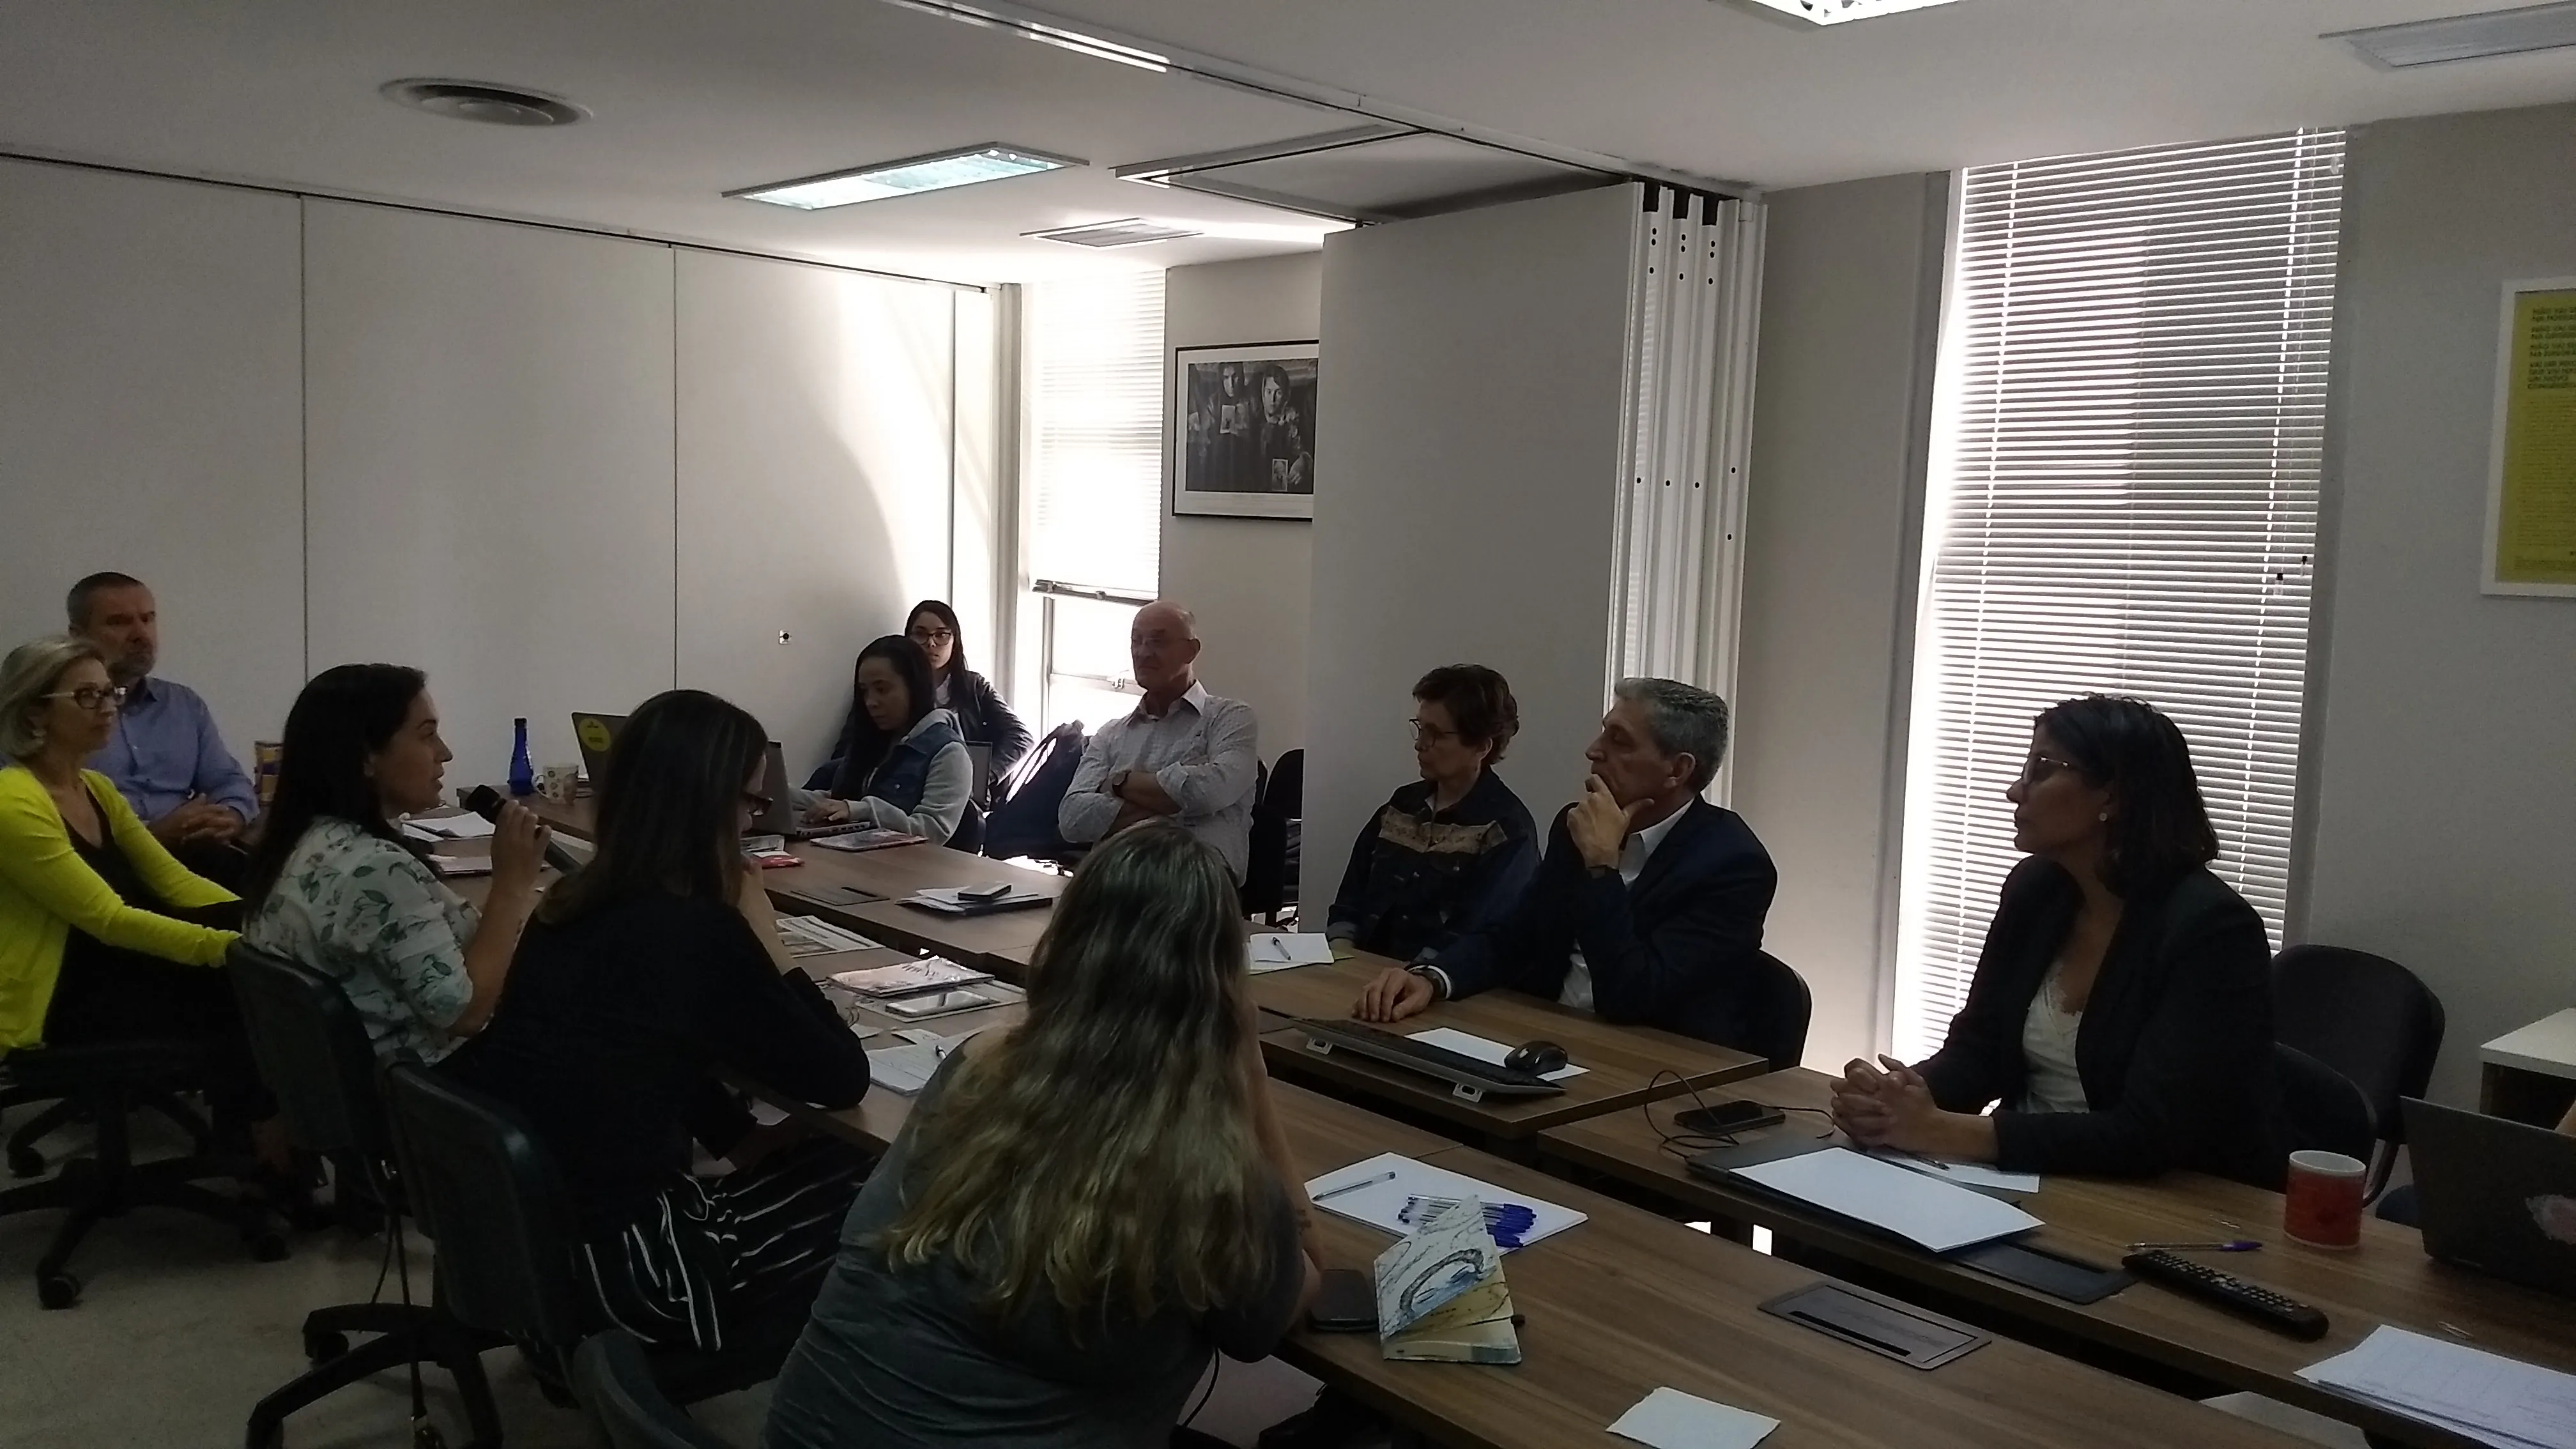 Gláucio Libório palestrou sobre os desafios do compliance durante reunião realizada pela B. Braun e Instituto Ethos, em São Paulo